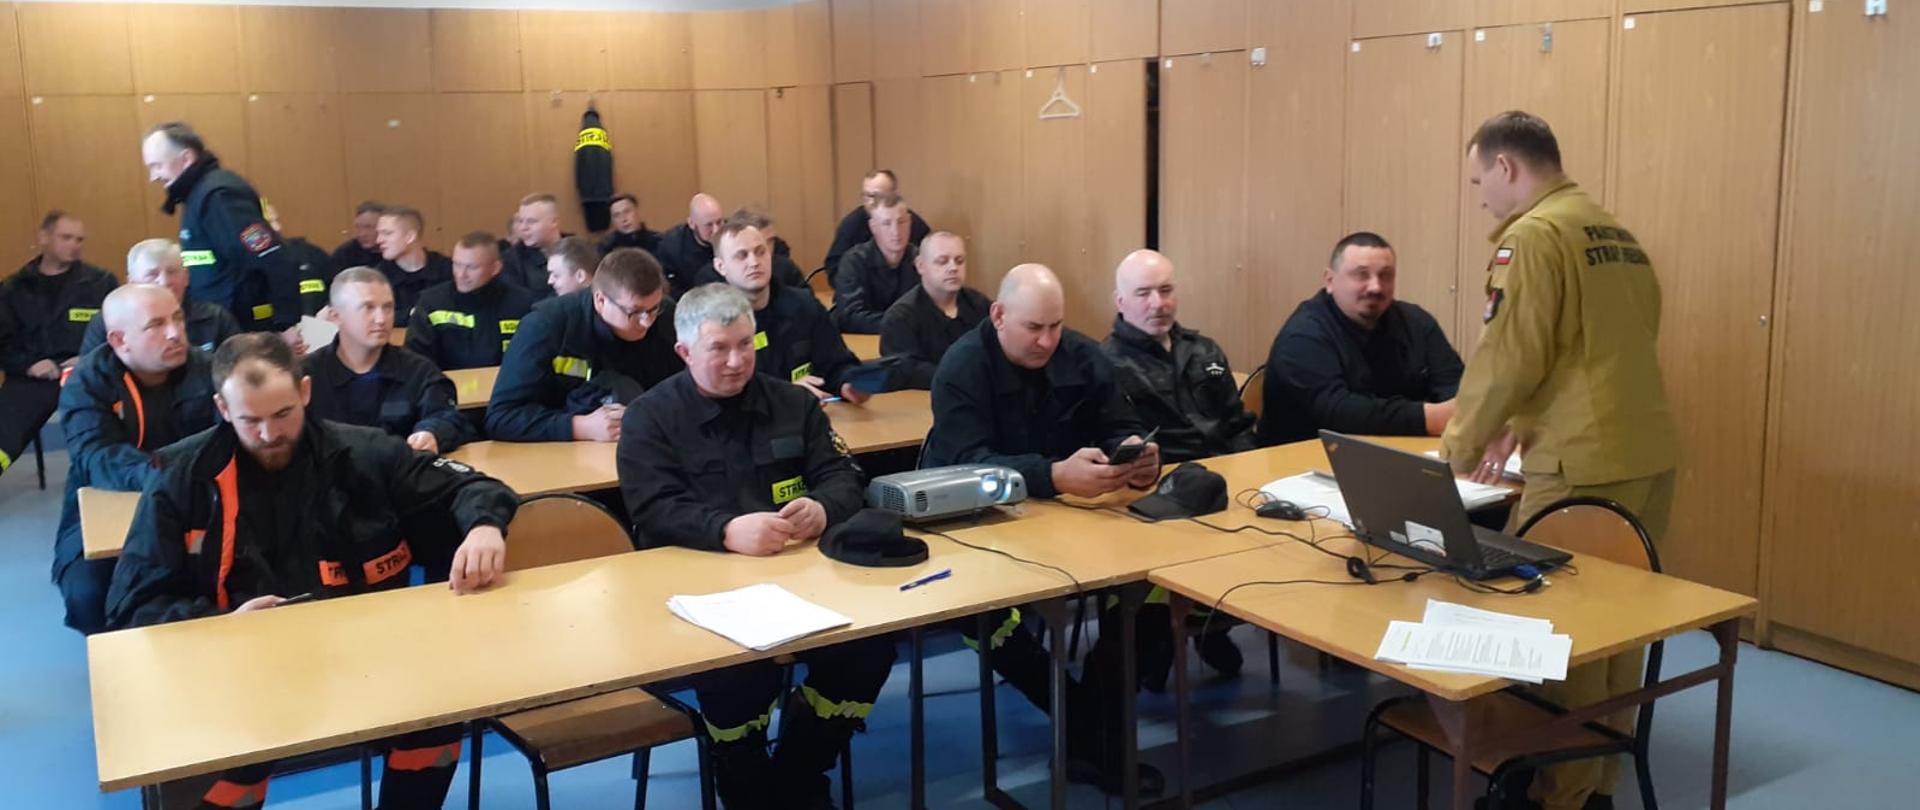 Na zdjęciu widać dowódcę JRG Kolno oraz strażaków OSP będących na szkoleniu naczelników.